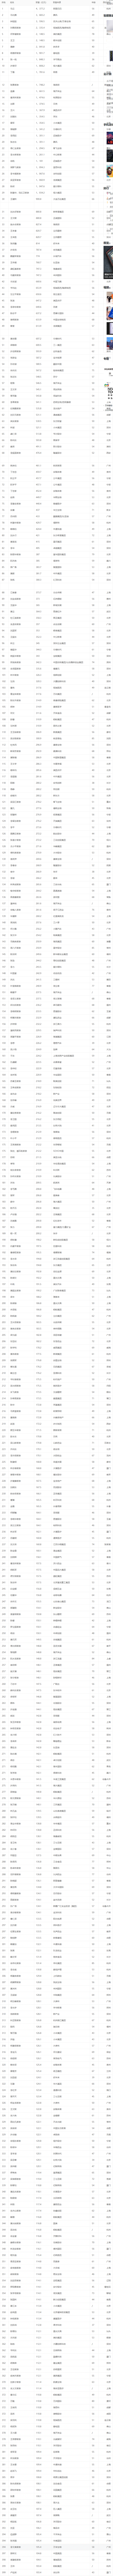 马云连续三年蝉联中国首富 2020福布斯中国富豪榜全榜单